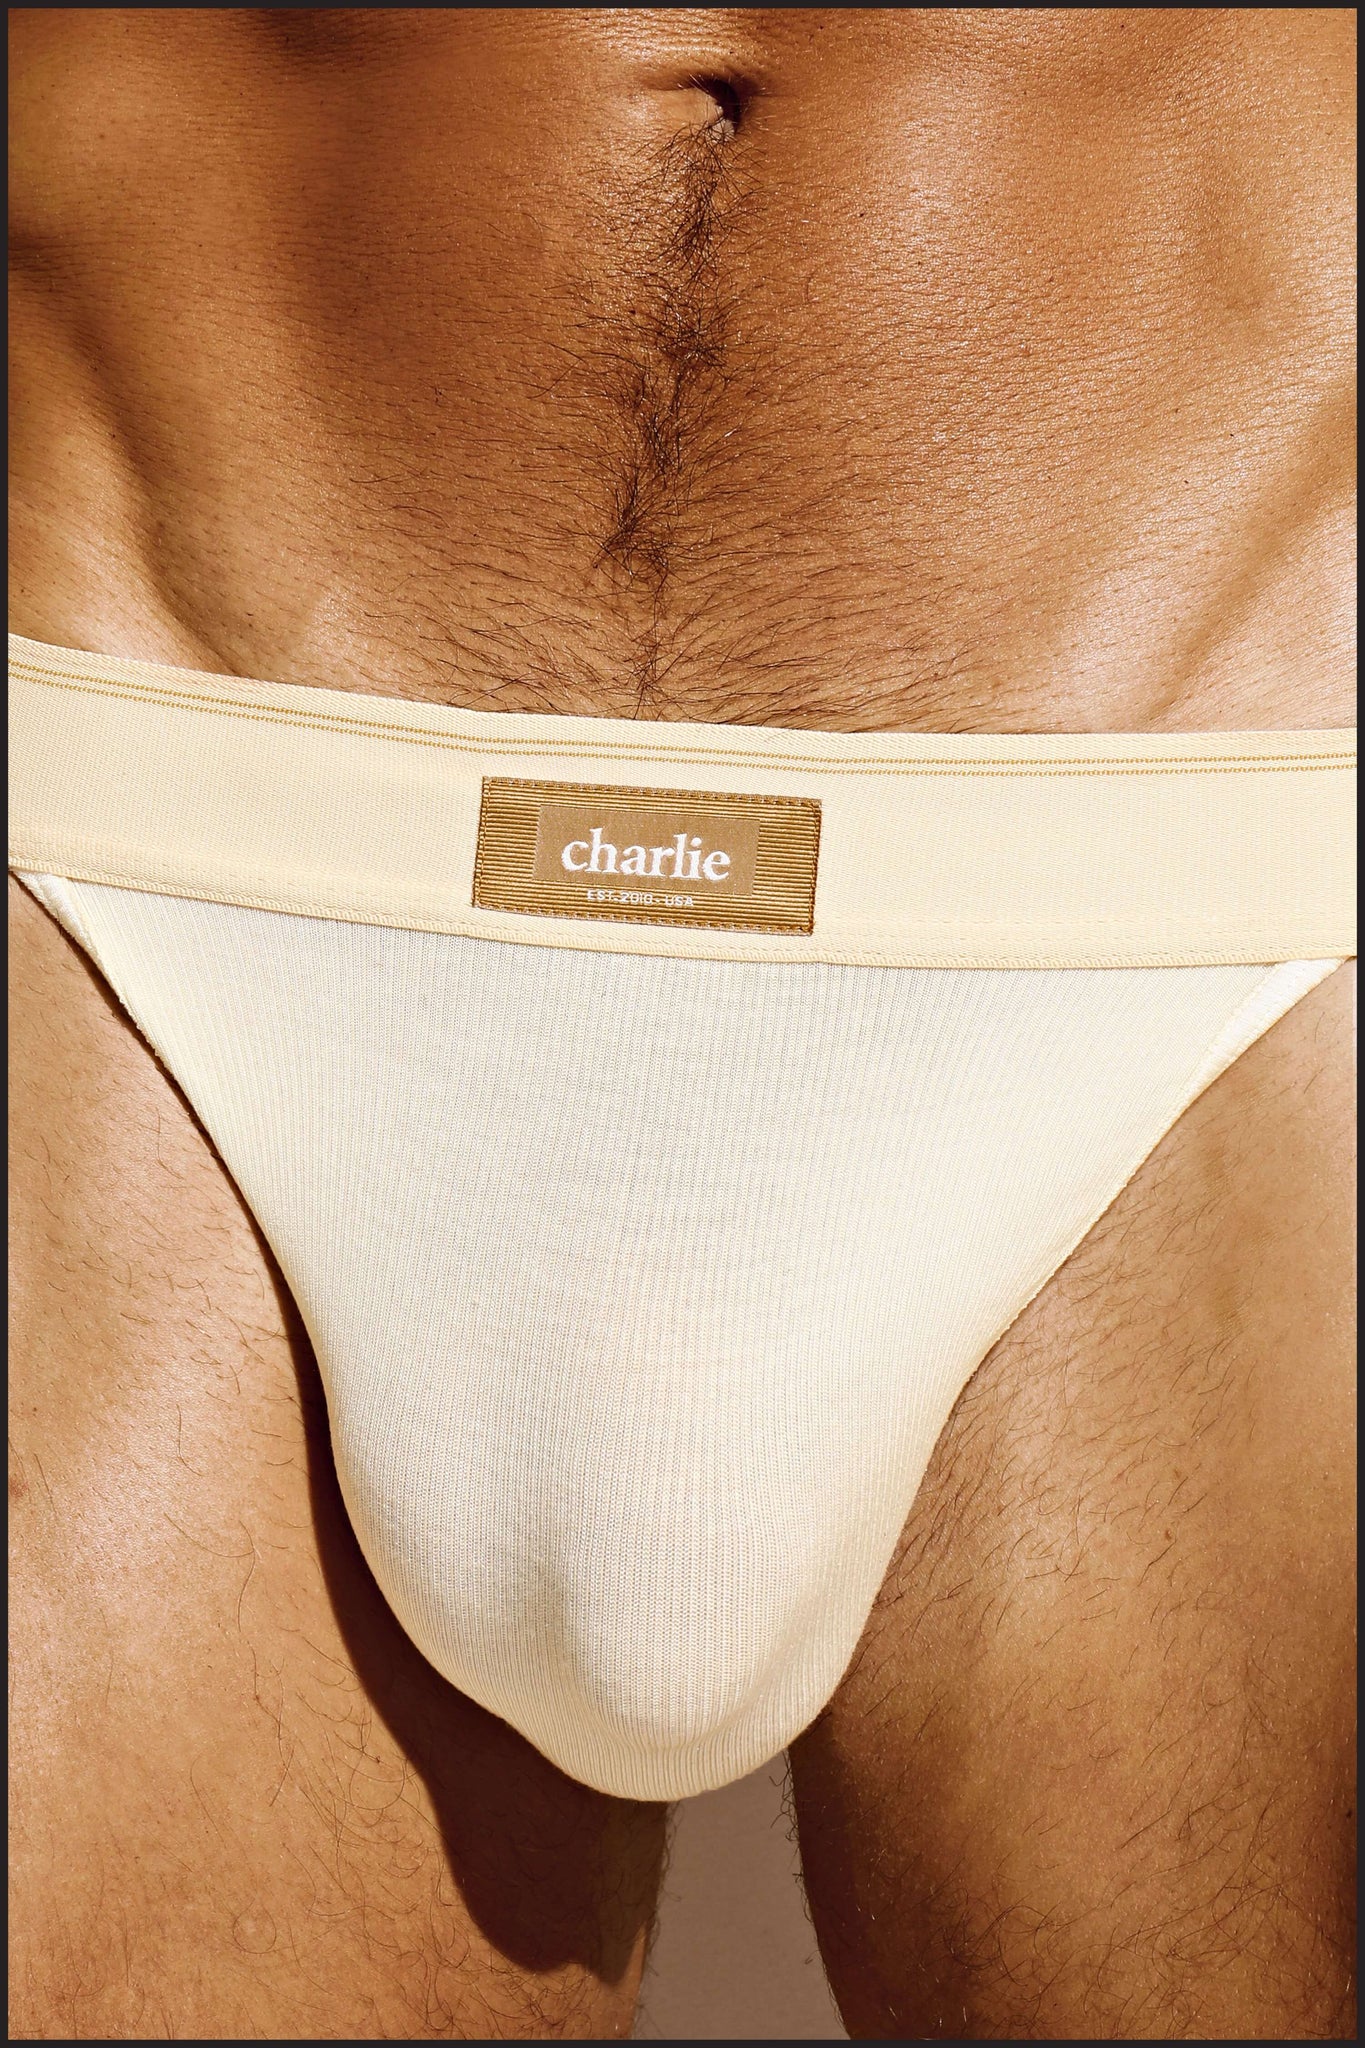 Charlie by matthew zink mens underwear